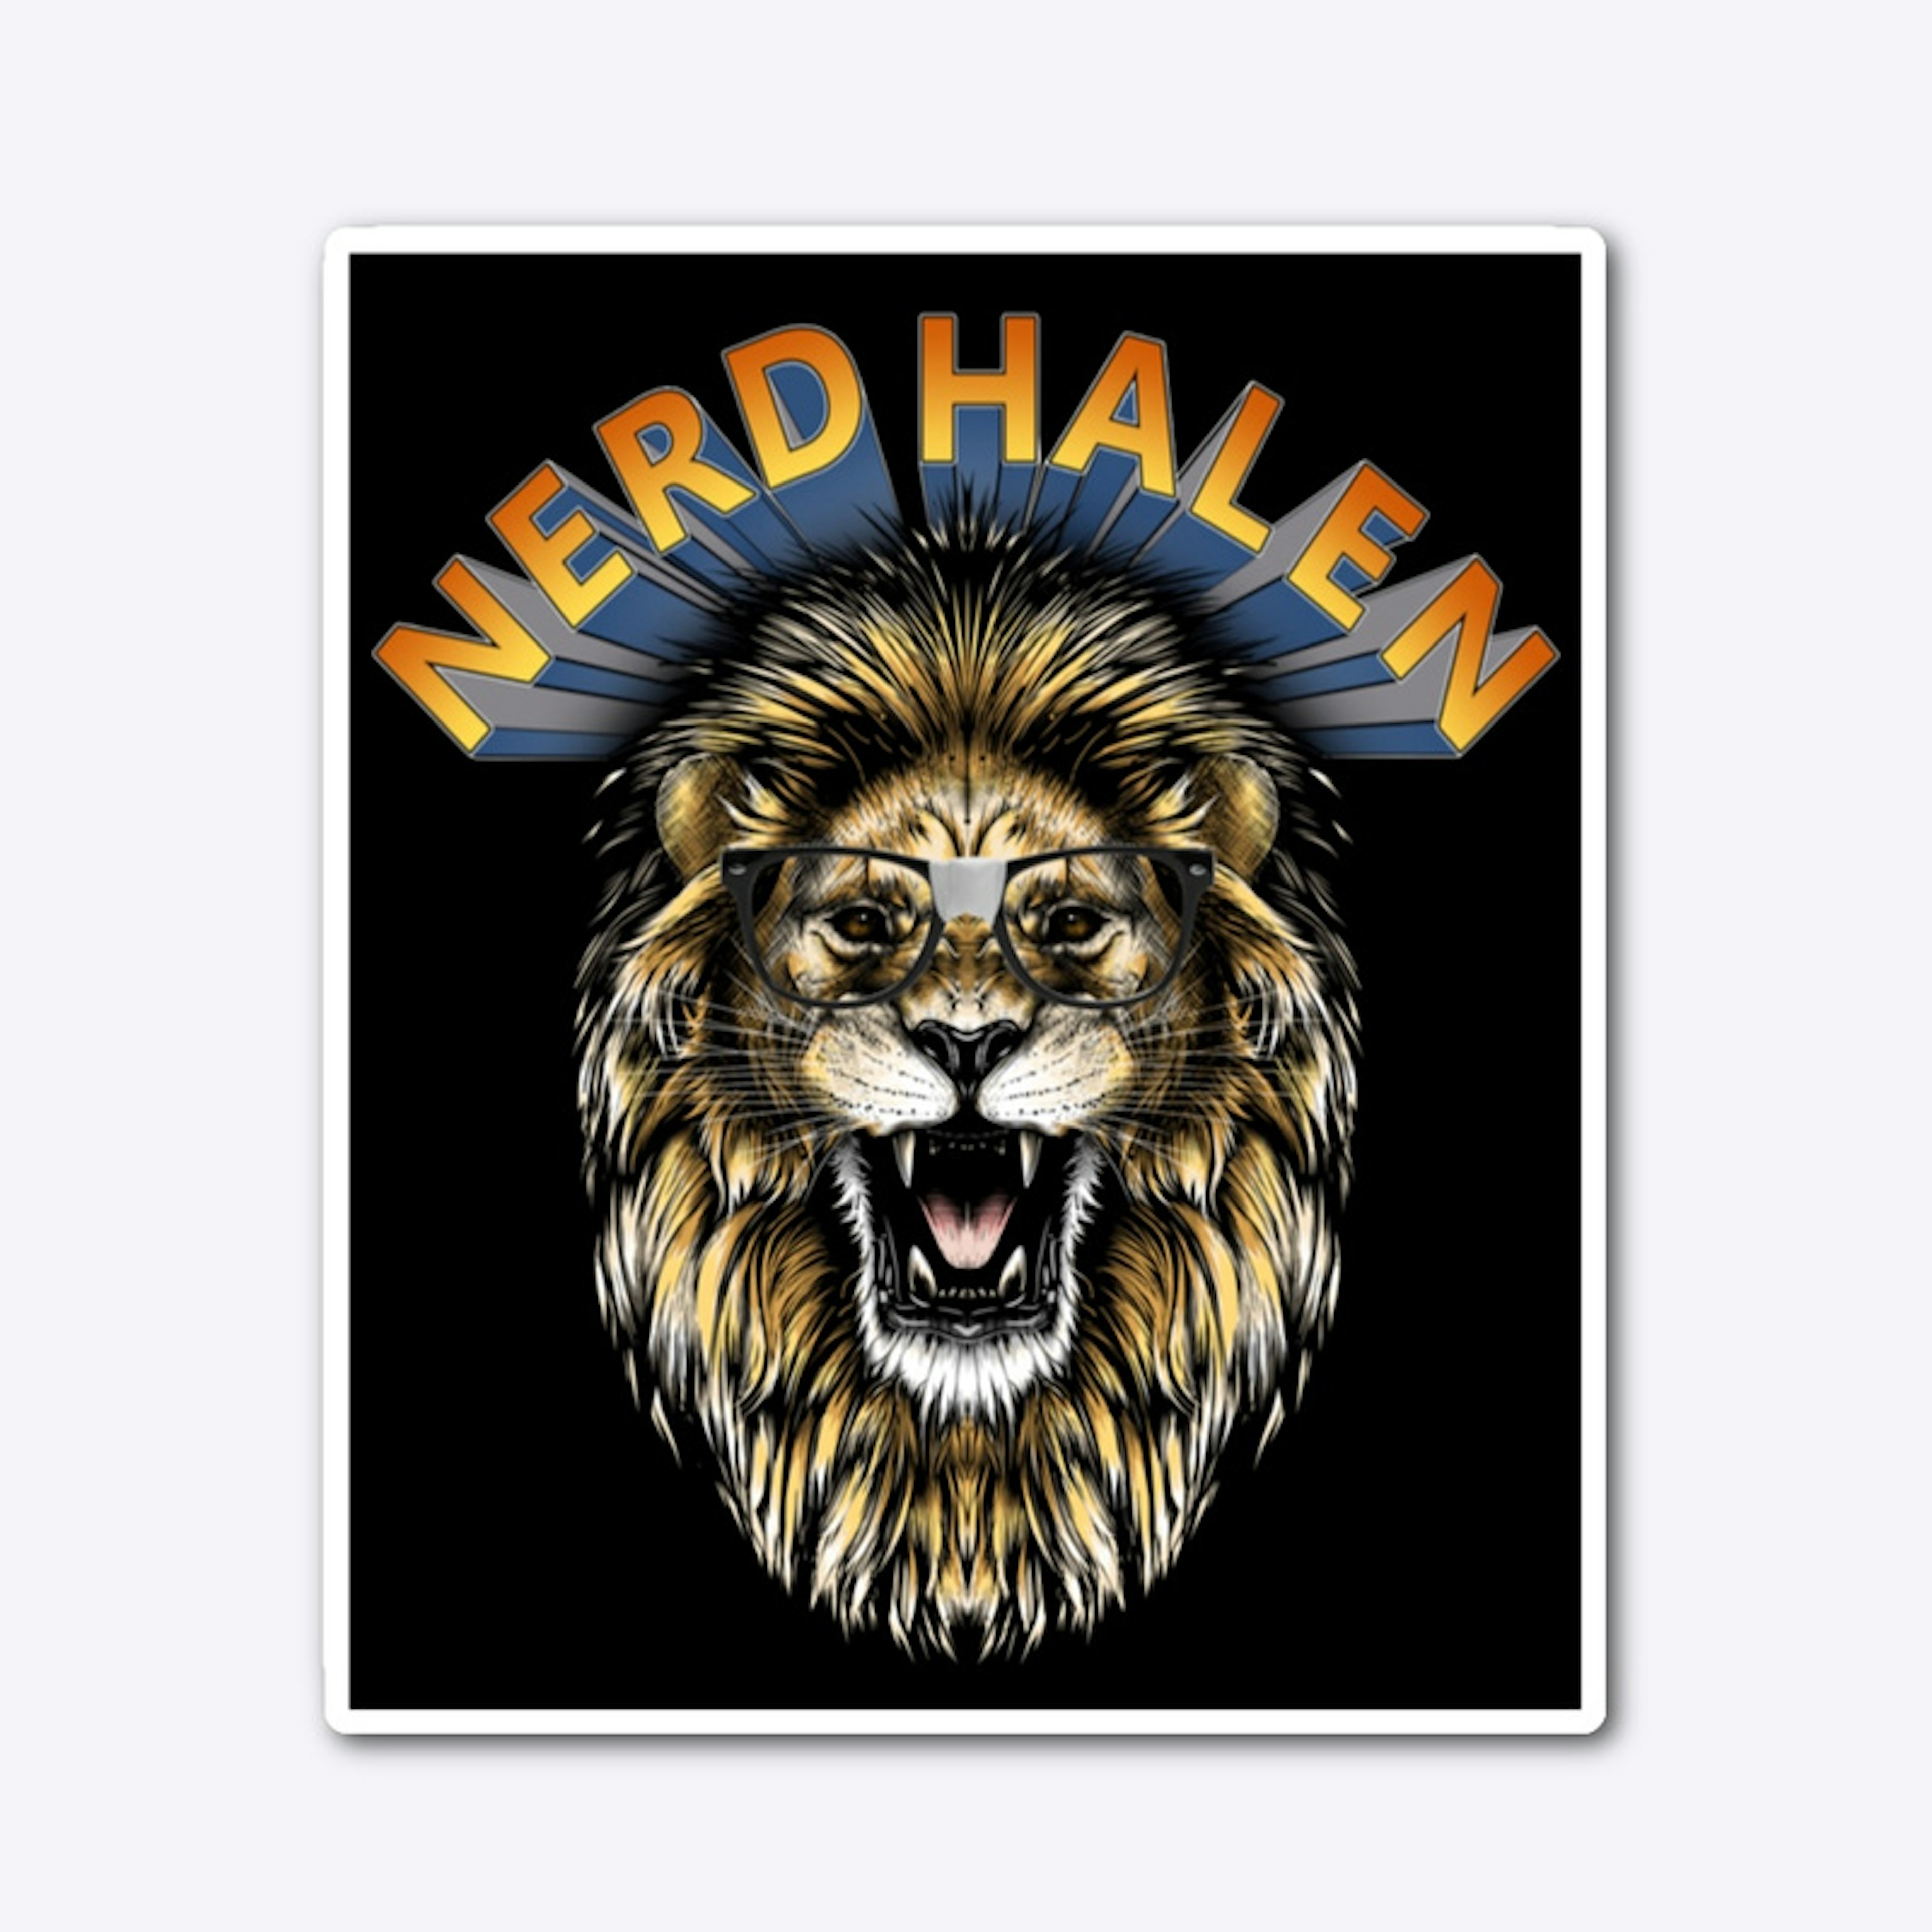 Nerd Halen Lion Sticker